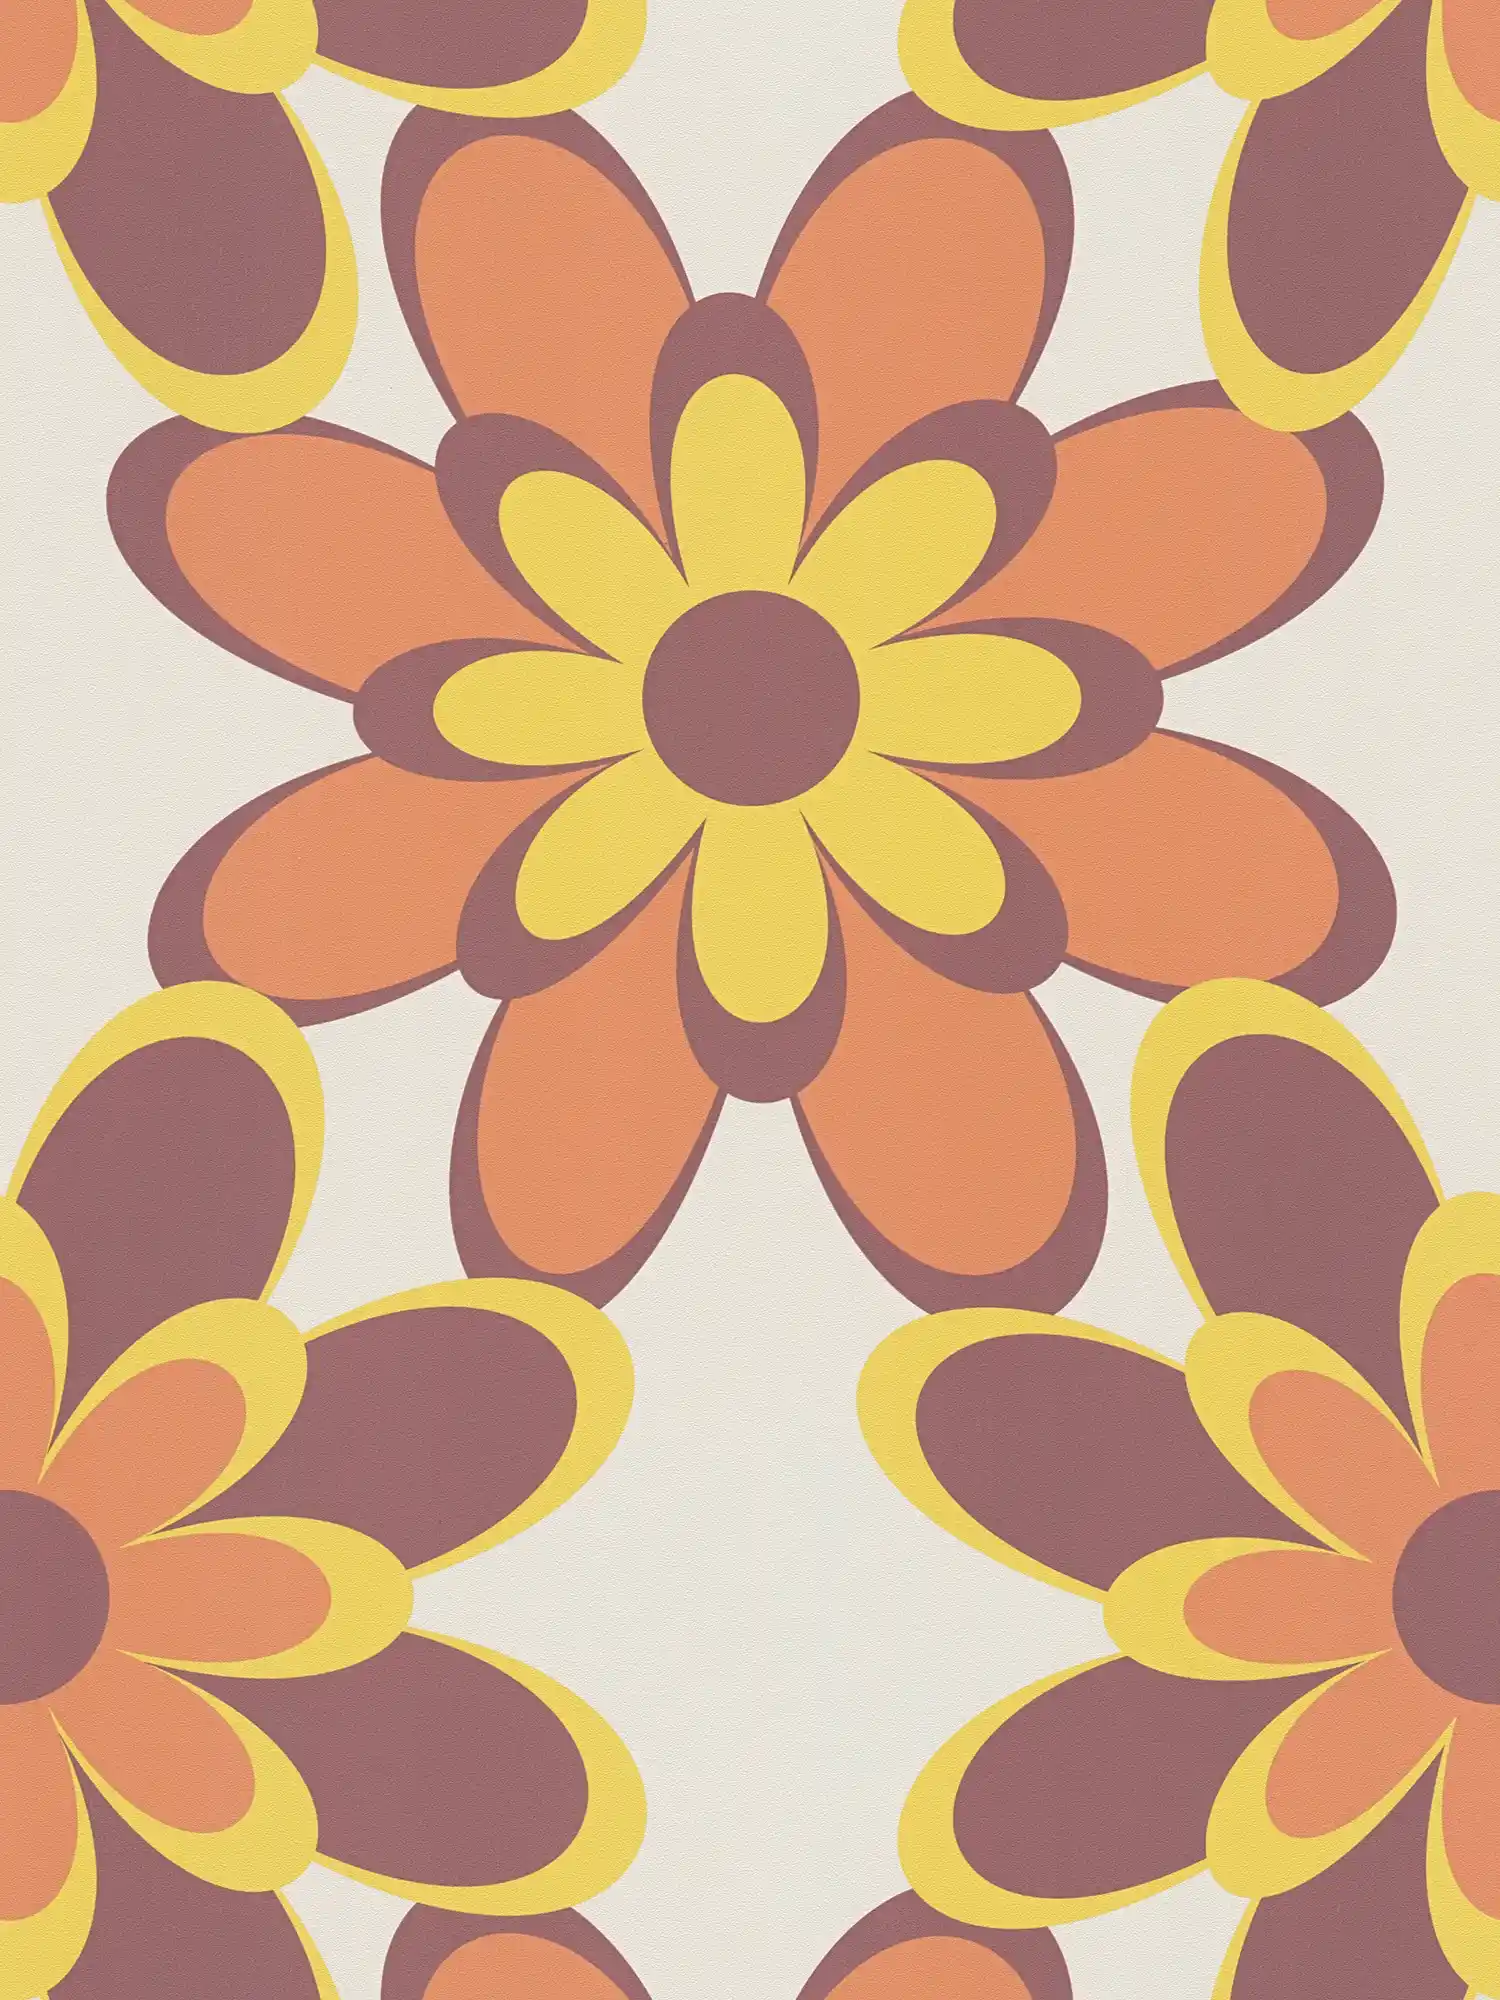         Retro Tapete 70er Blumenmuster – Orange, Gelb, Braun
    